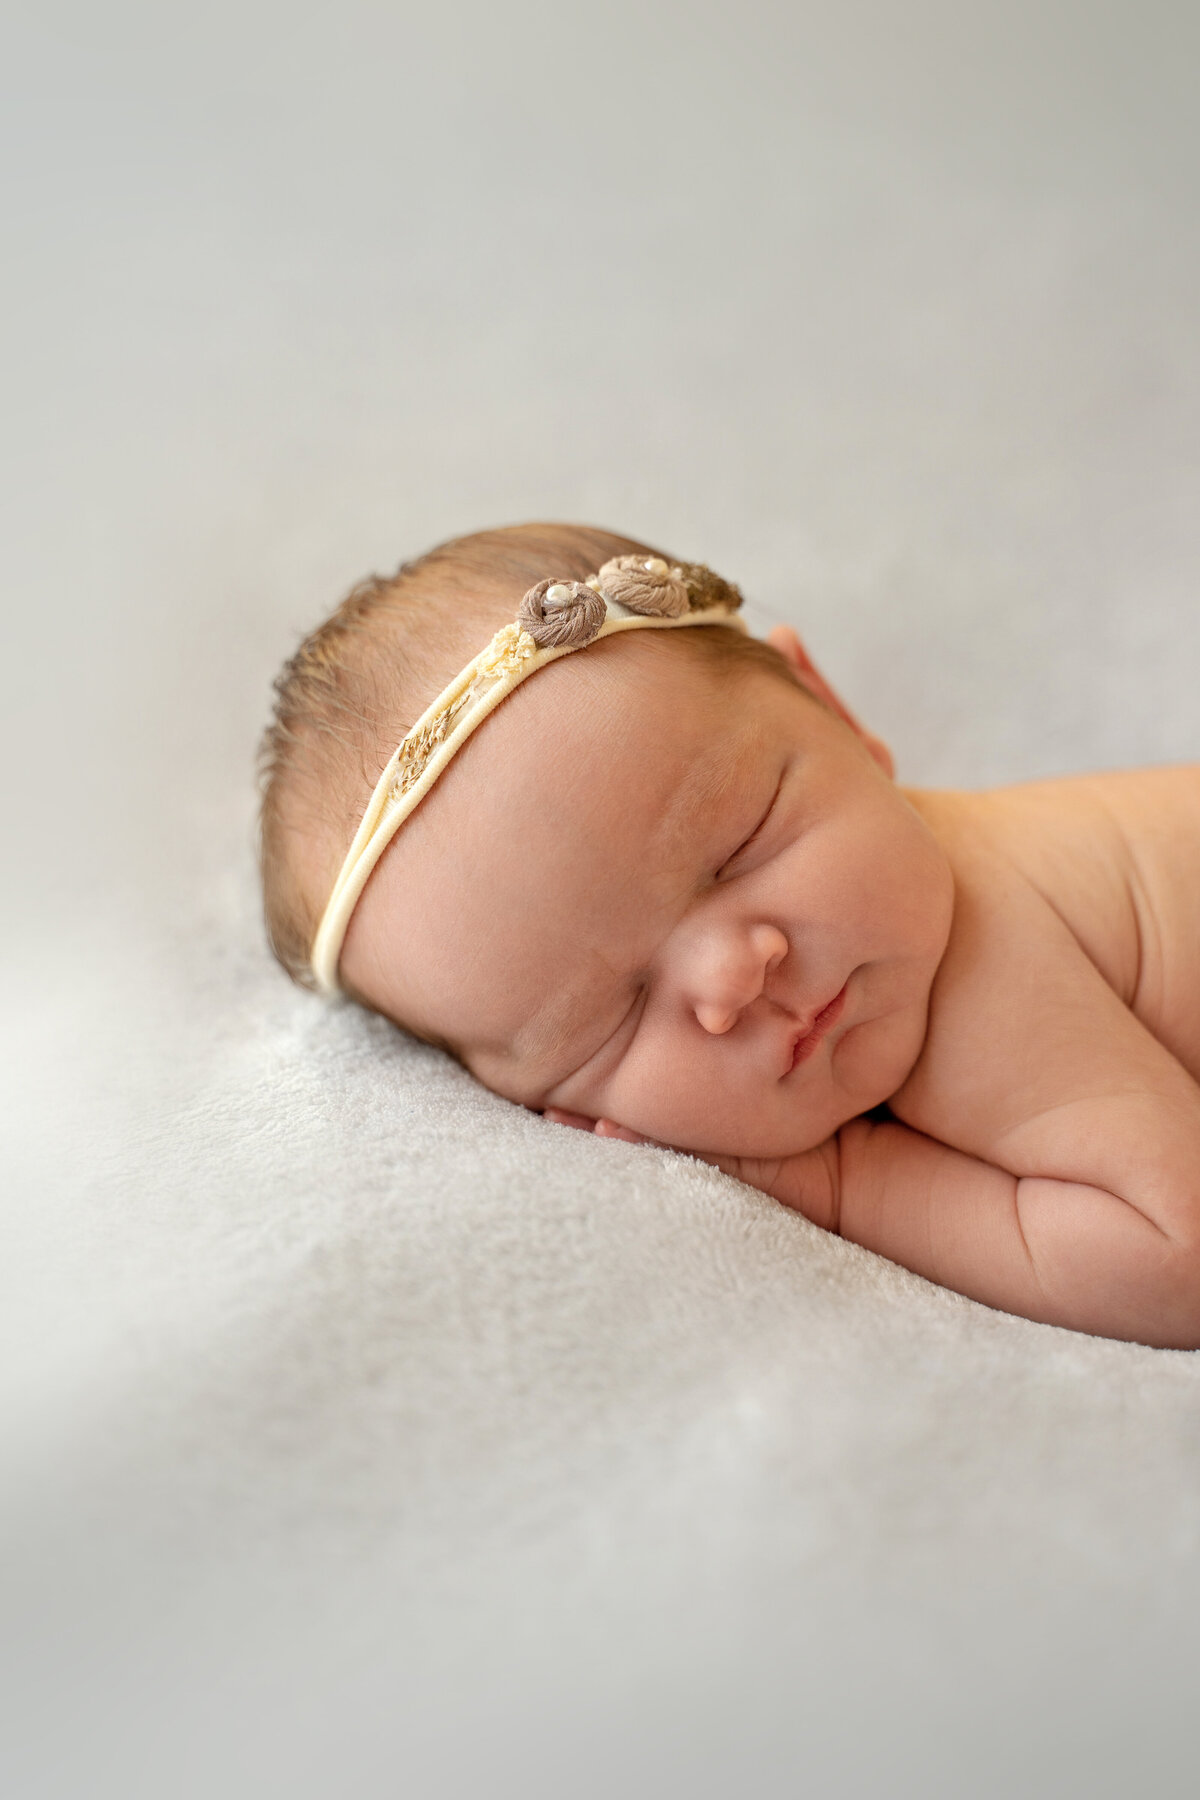 newborn-baby-with-yellow-handband